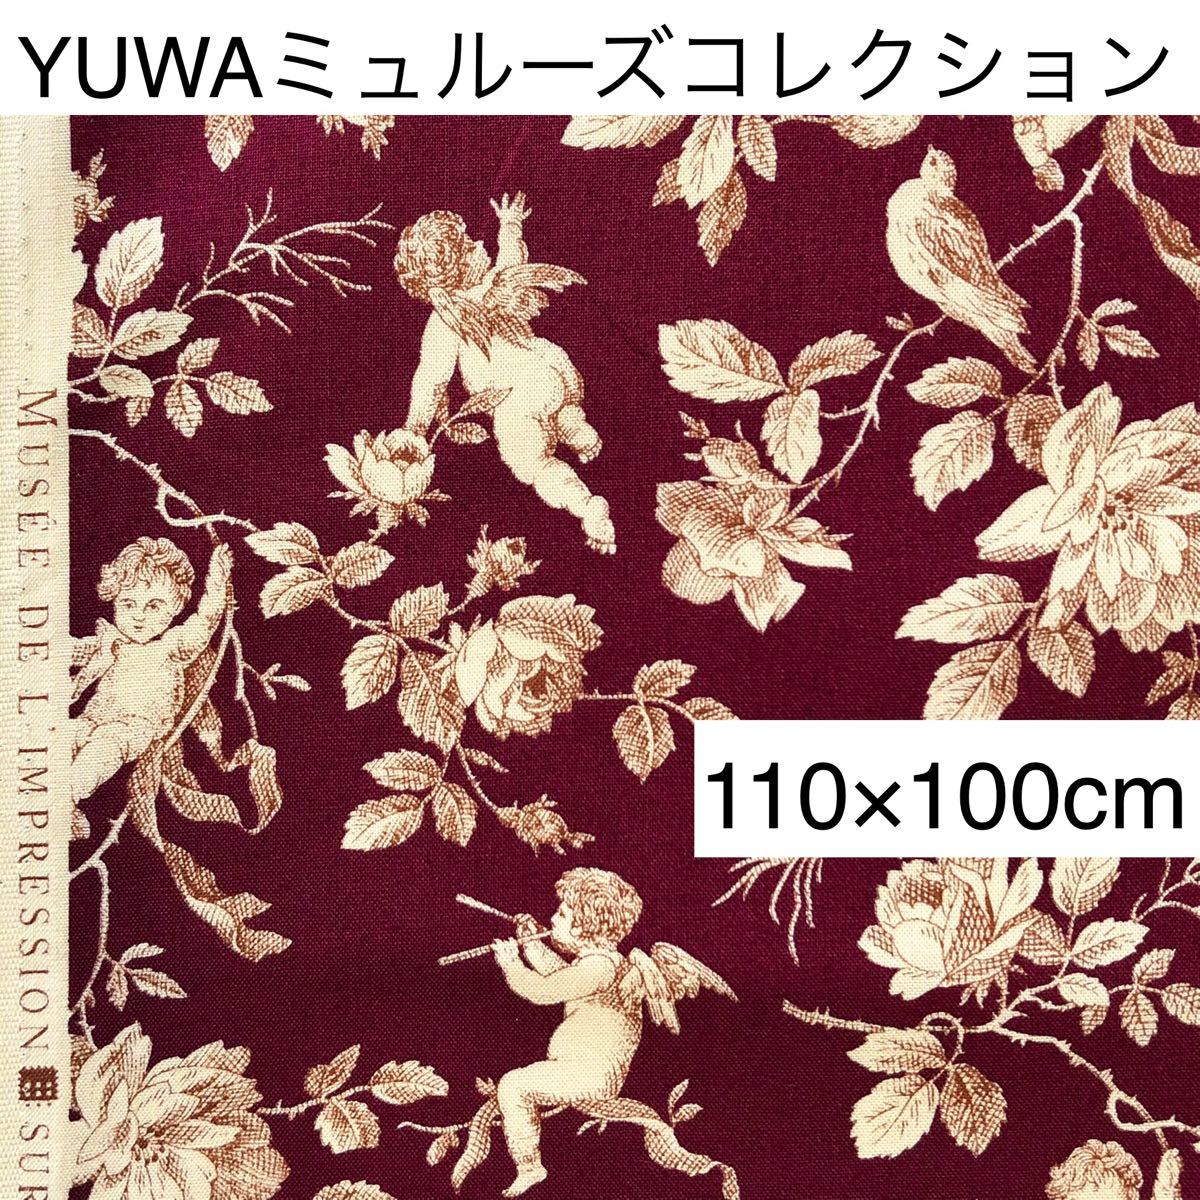 YUWA ミュルーズコレクション「天使」綿生地 ボルドー 幅110×長さ100cm コットン エンジェル 柄